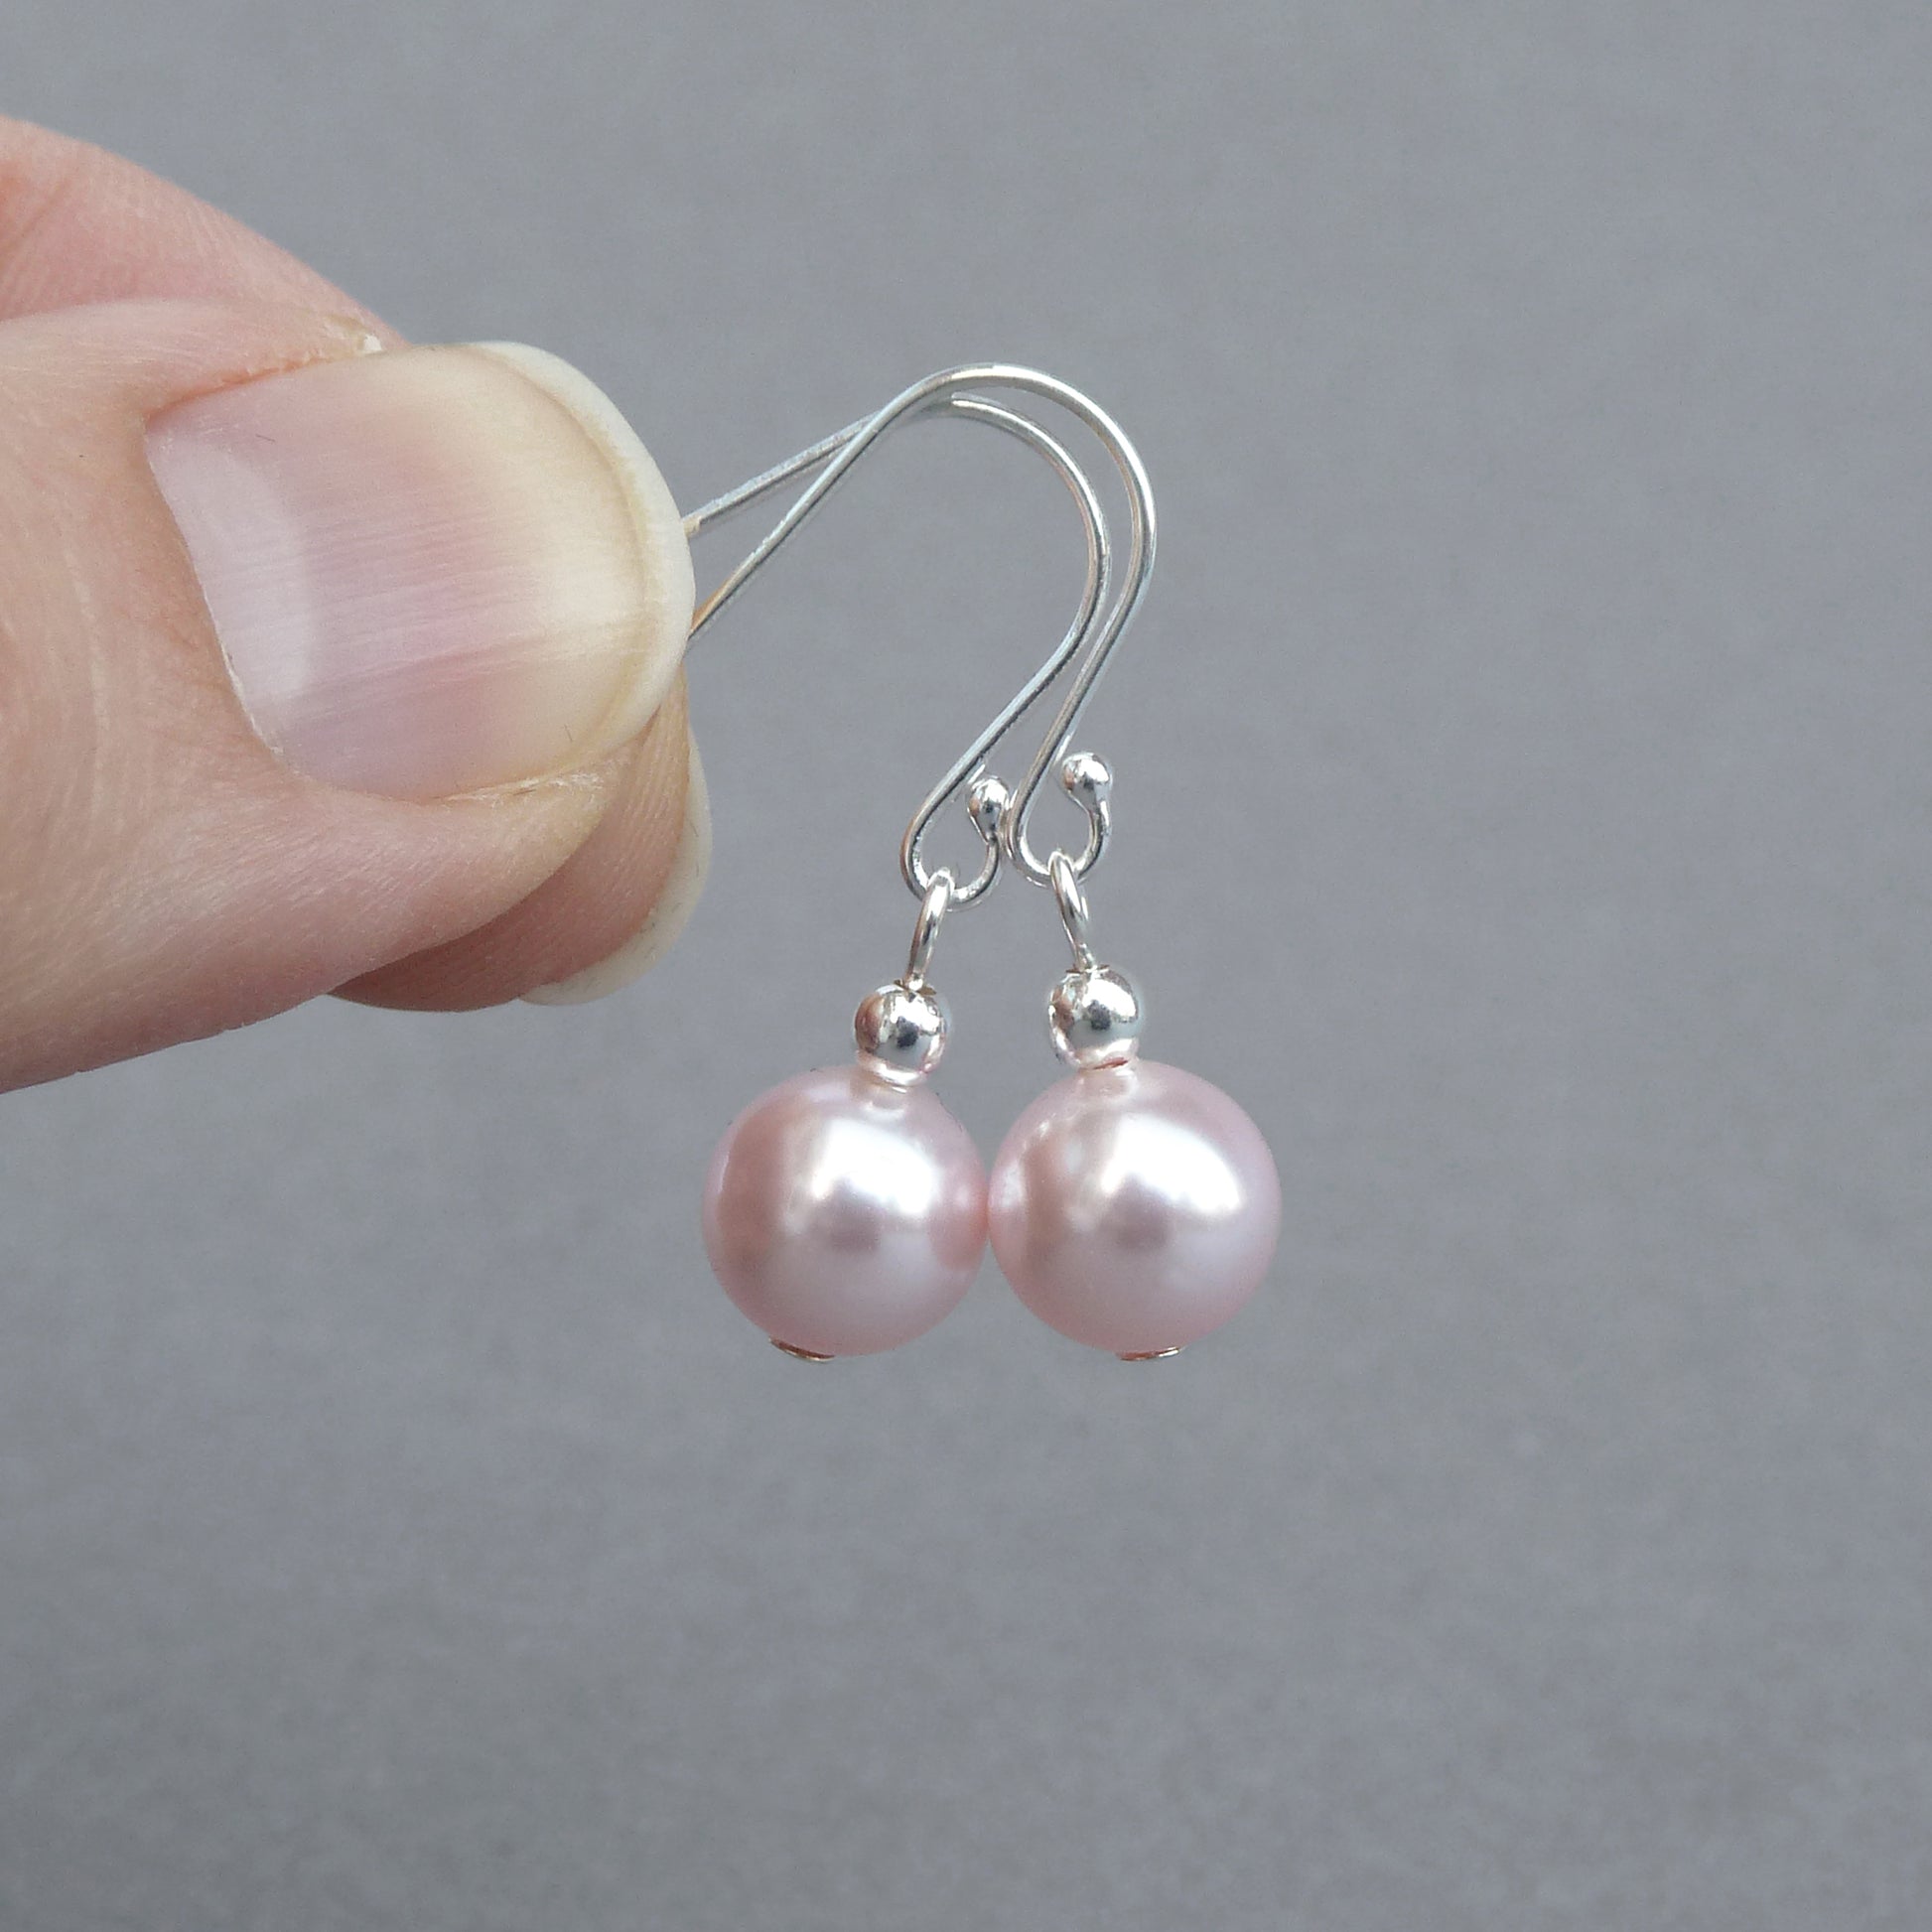 Simple blush pink earrings